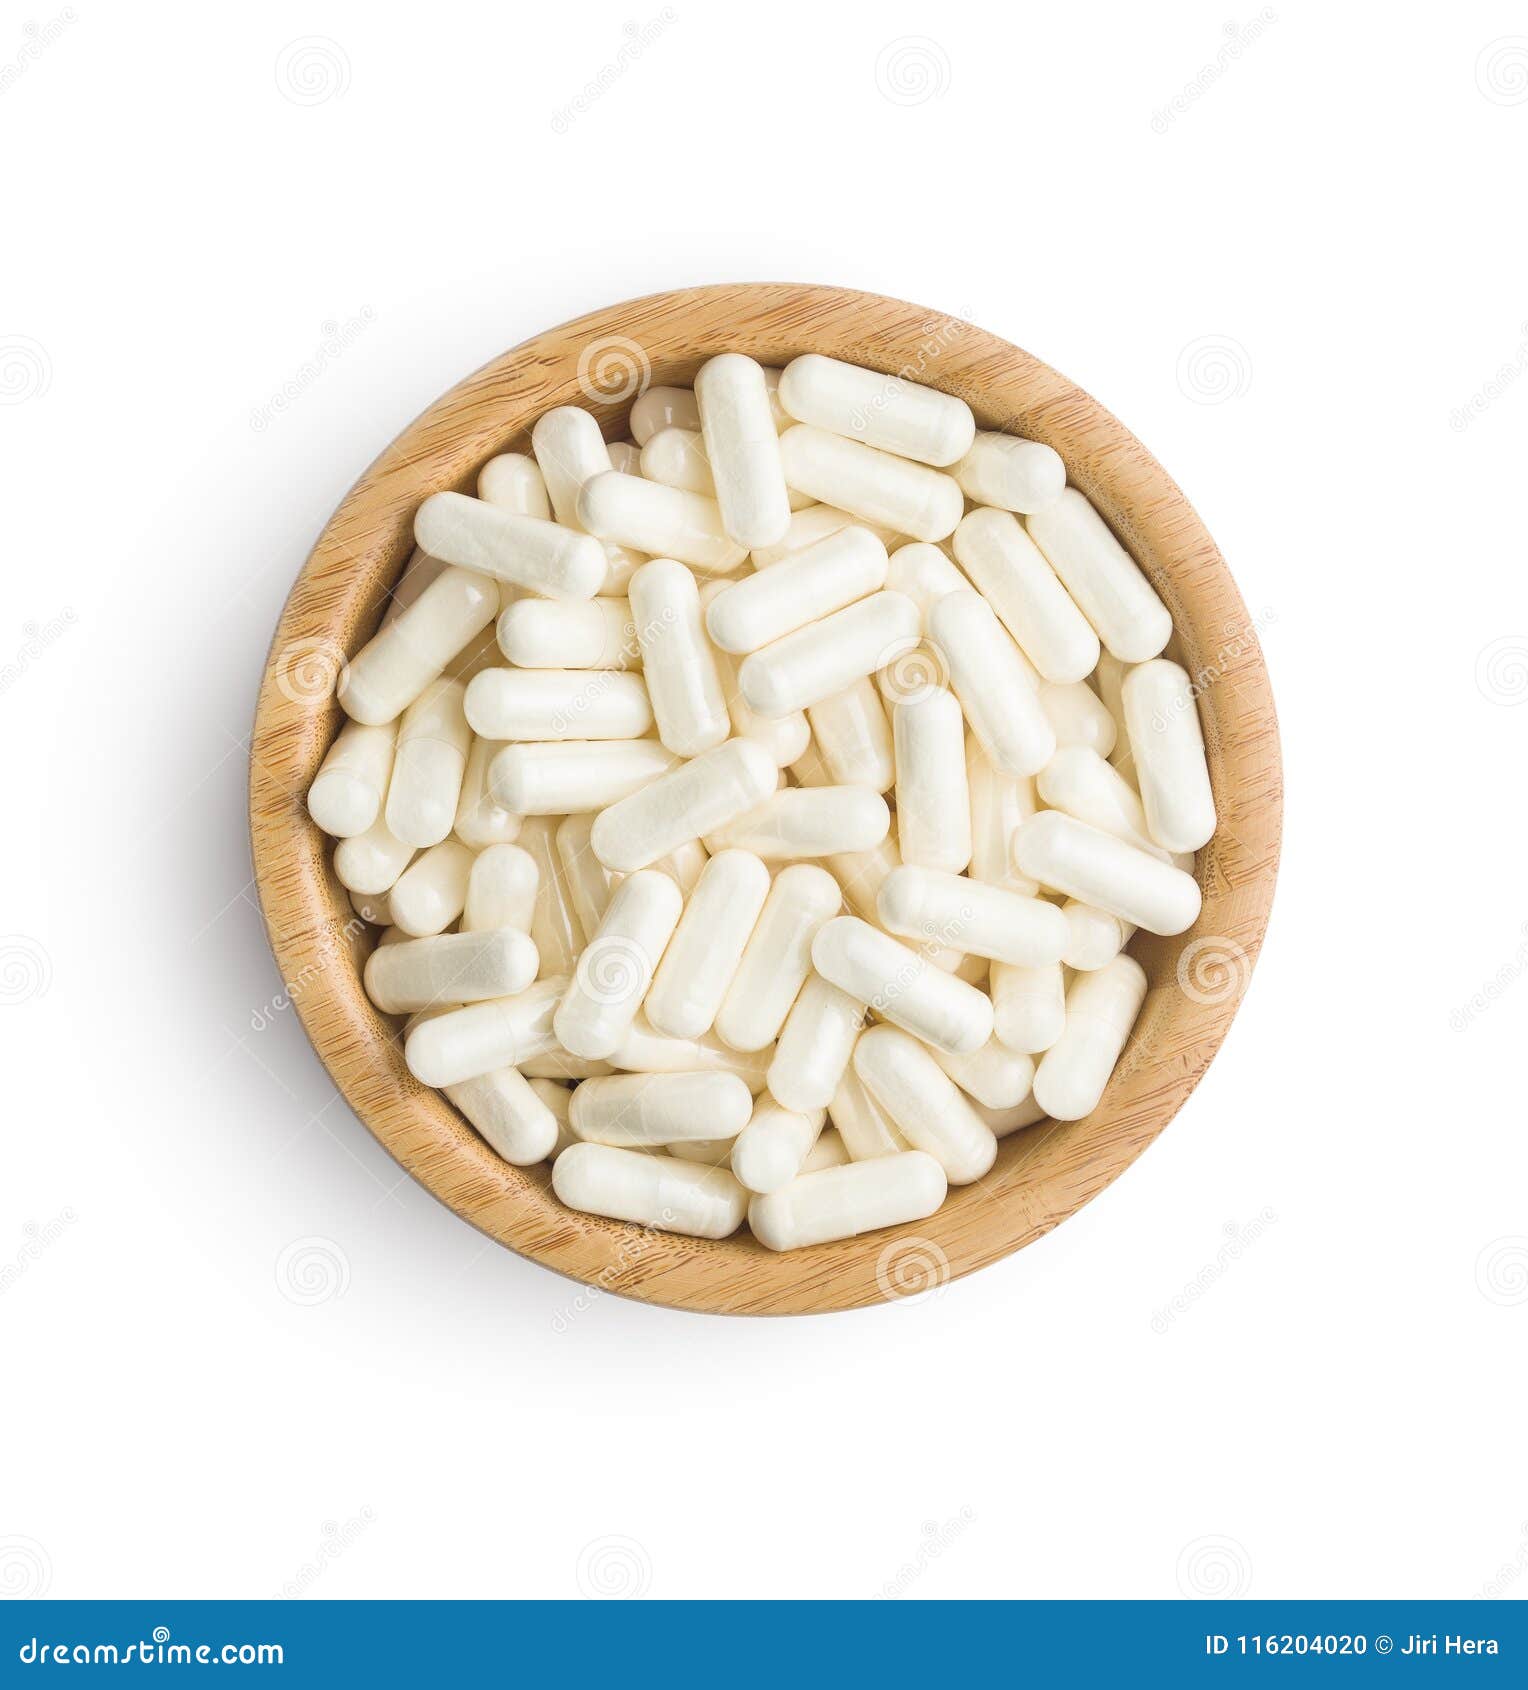 white medicine capsules.